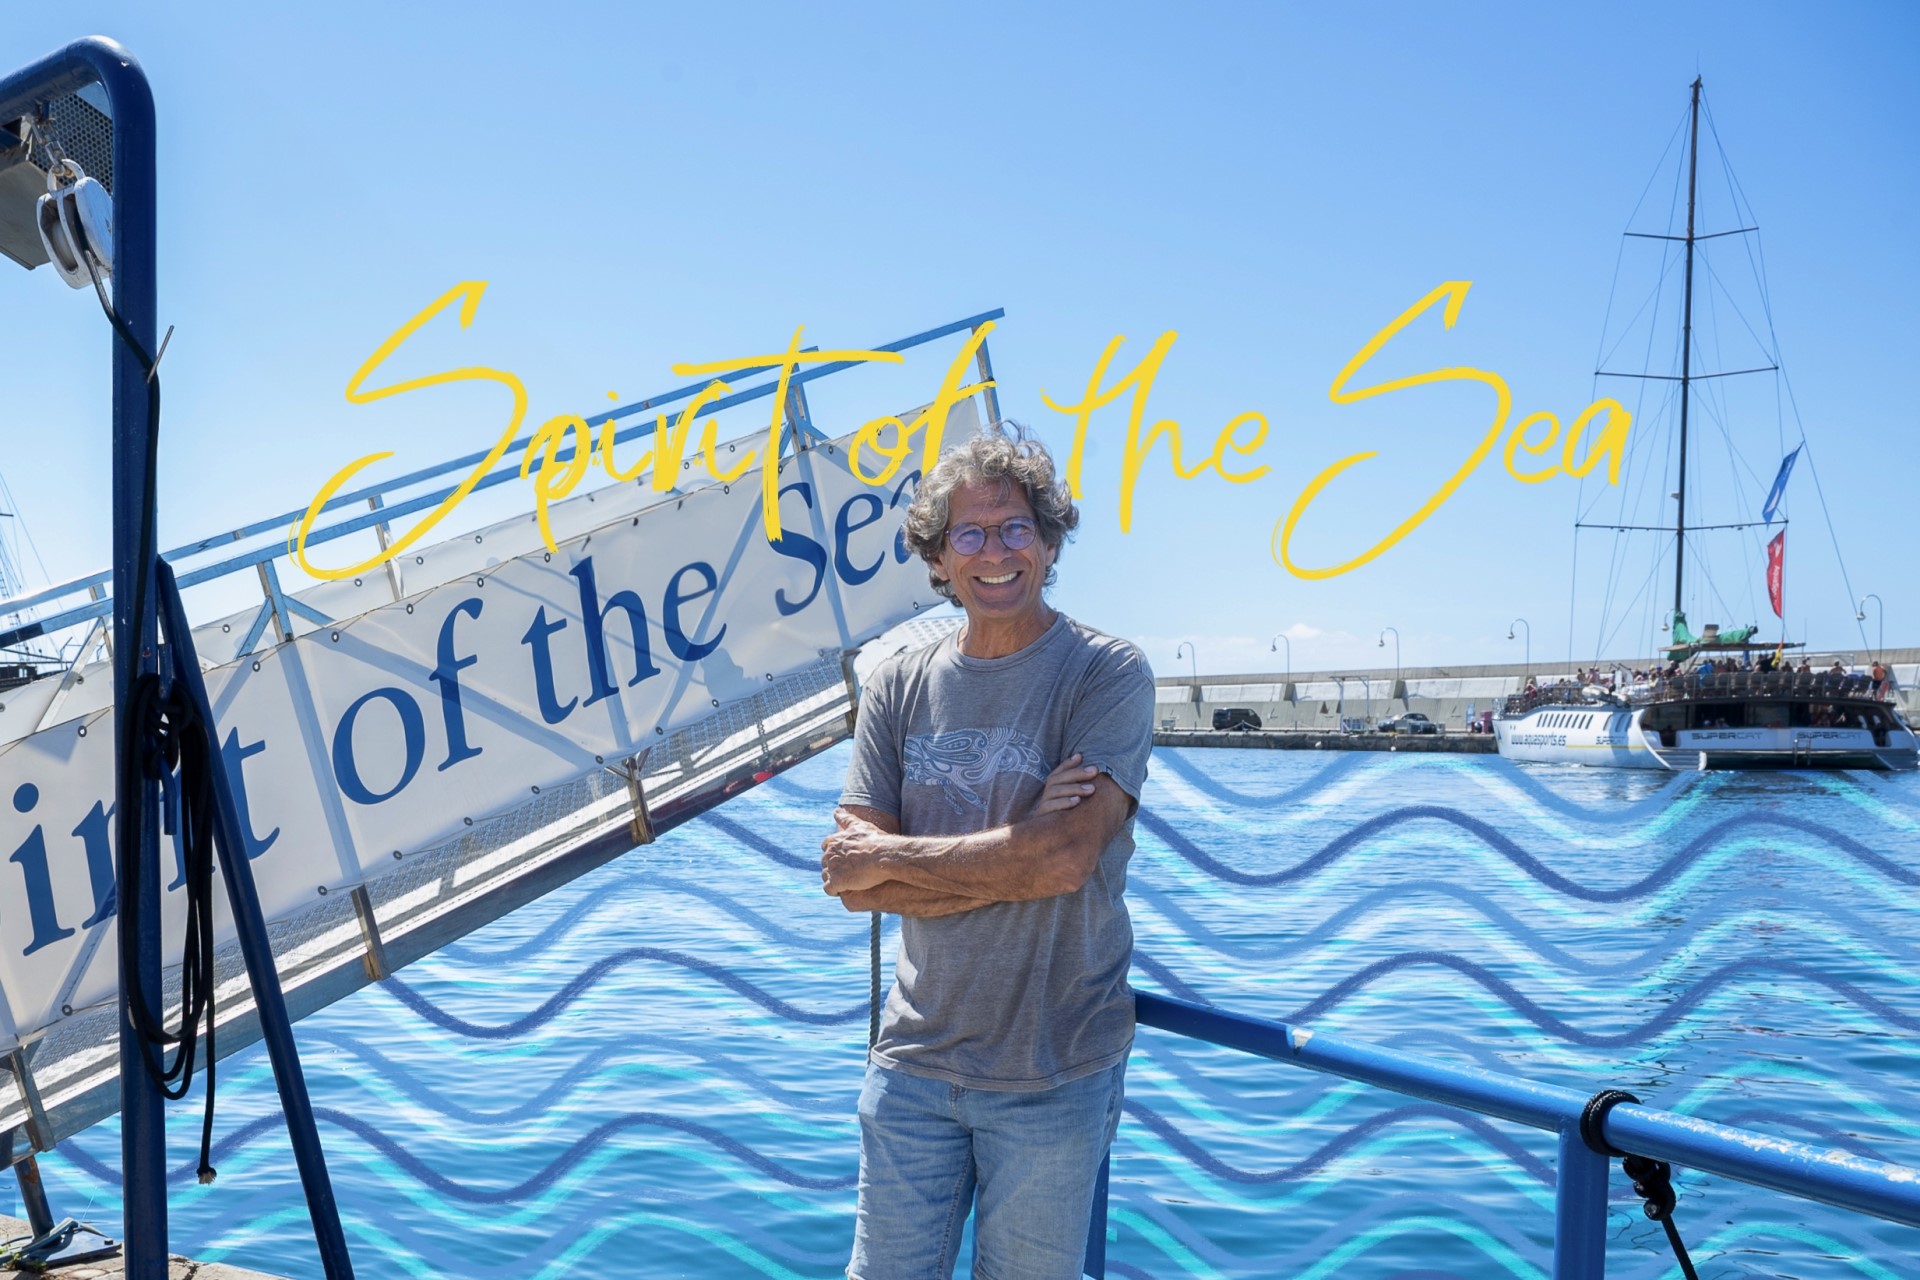 Spirit of the sea - Javier Zaera